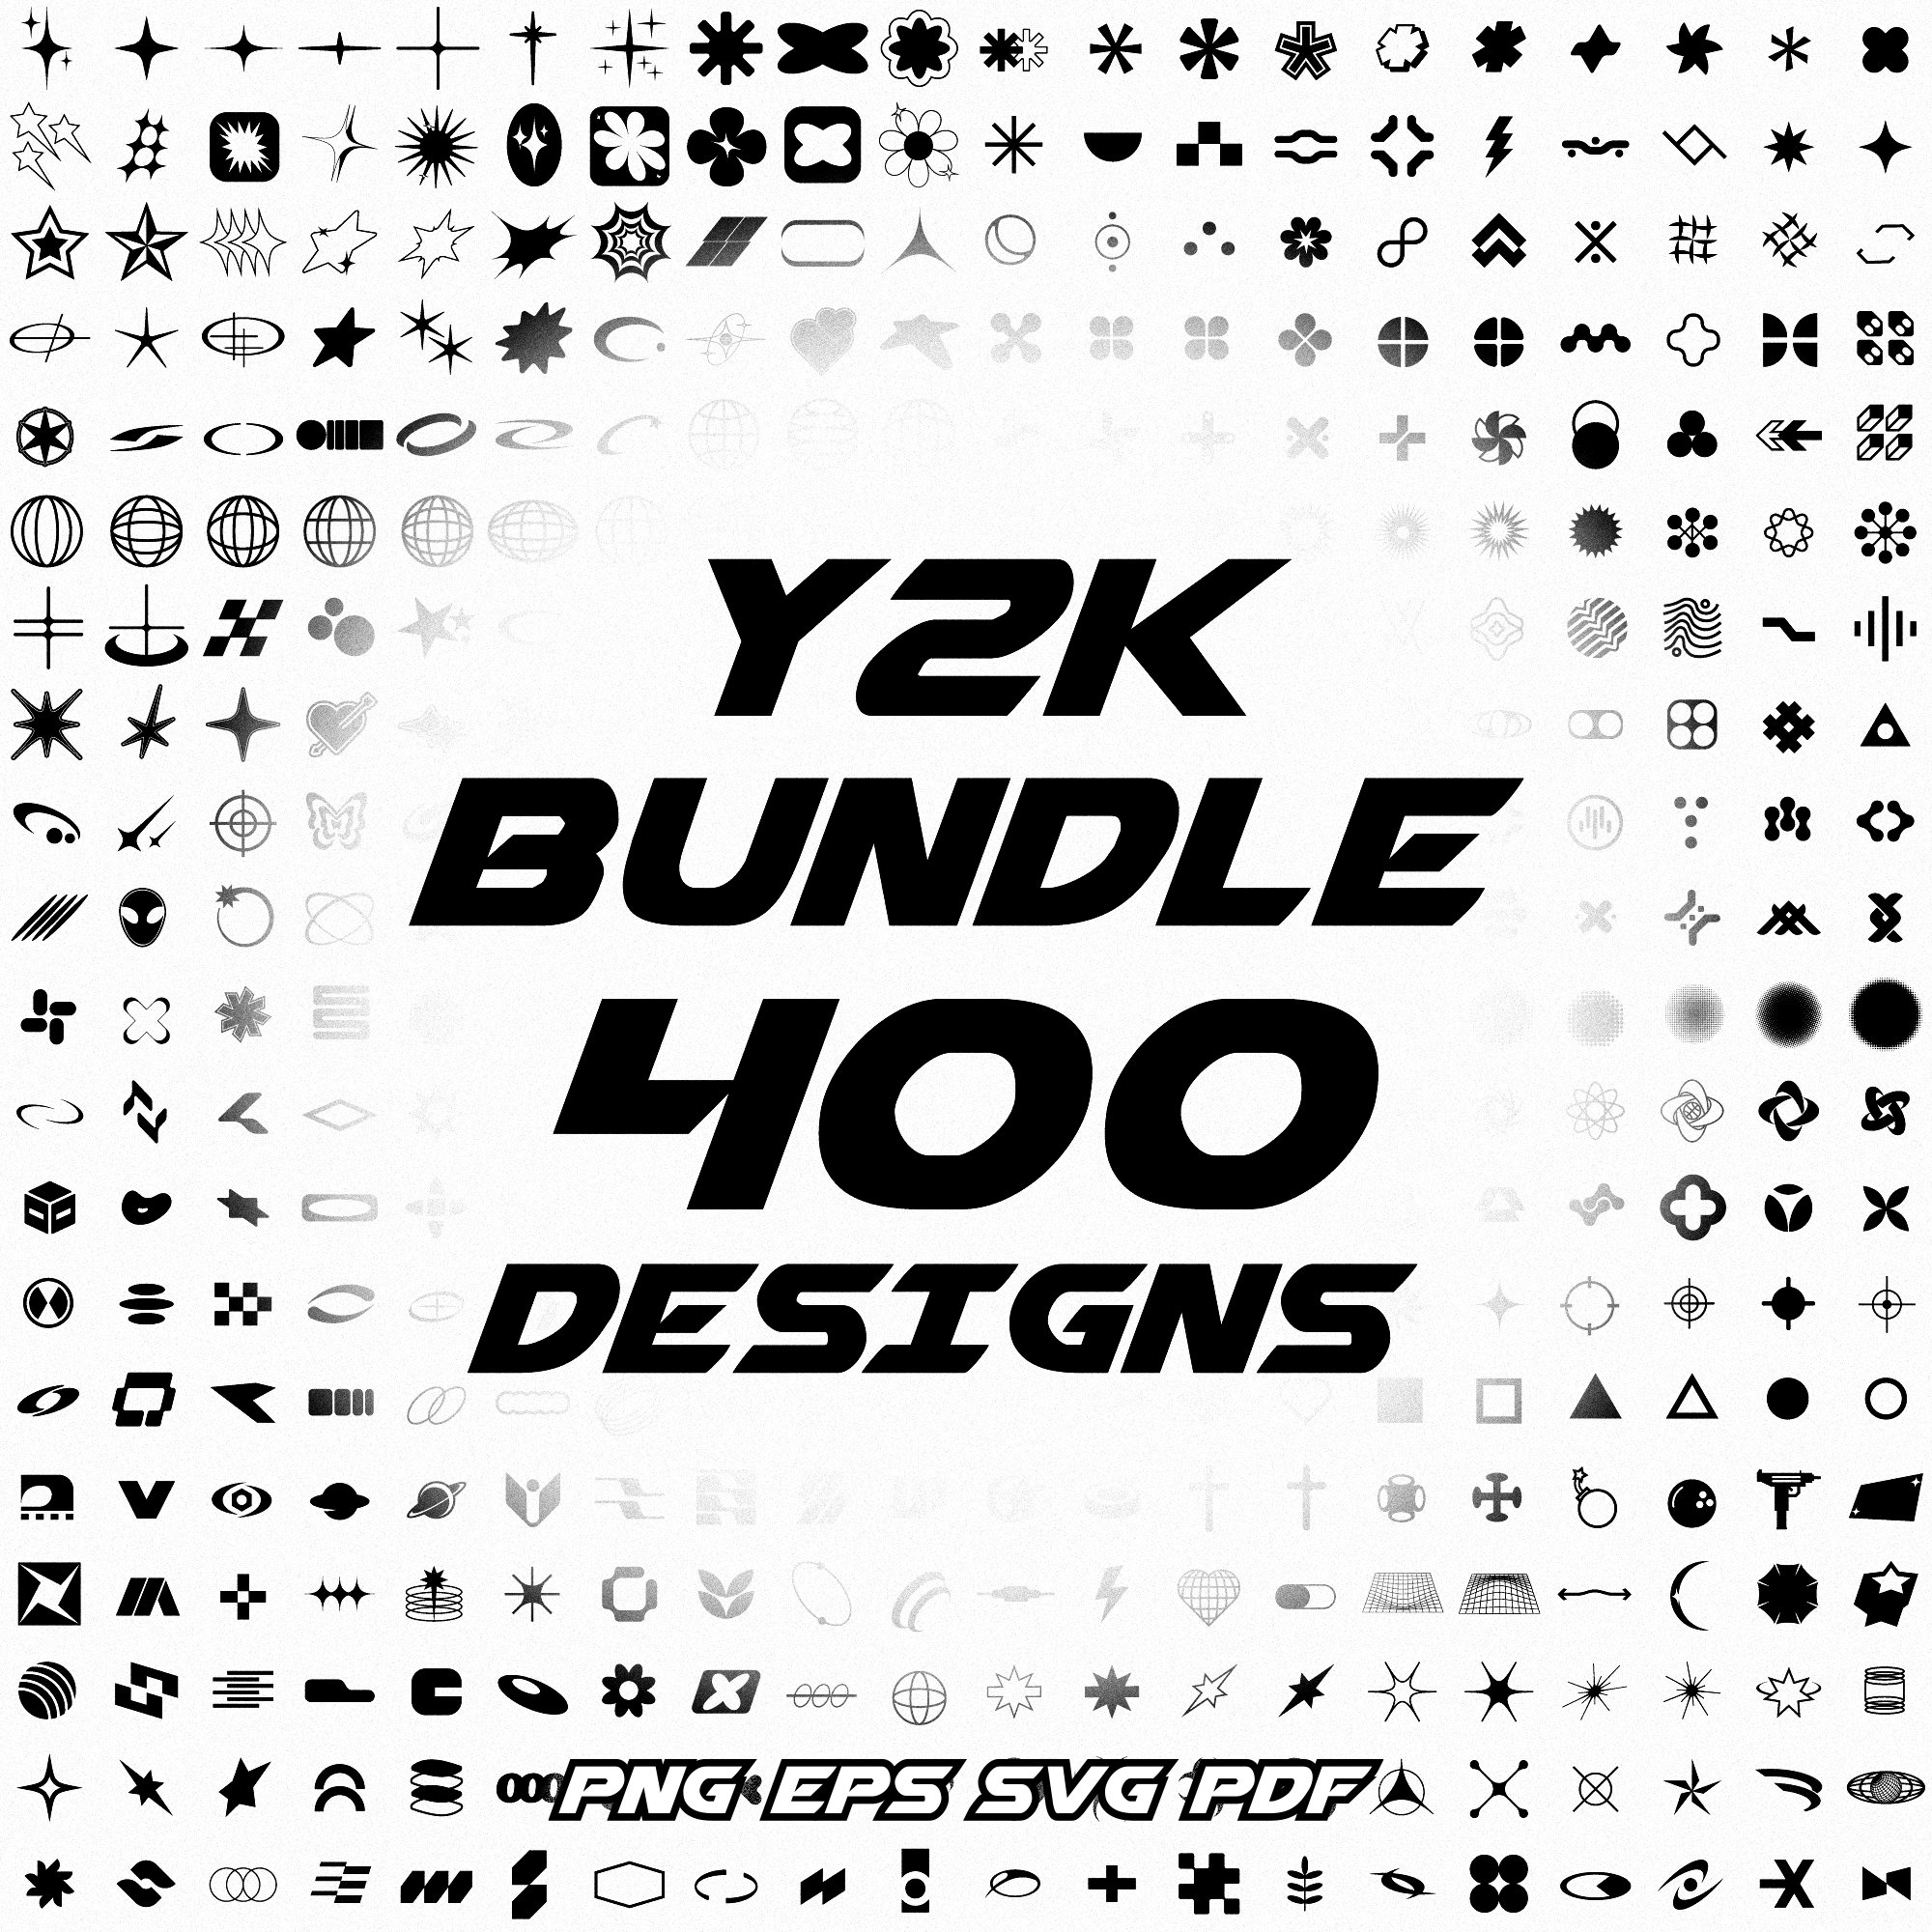 Y2K Shapes Bundle 400 Unique Icons & Shapes Y2K Vector Y2K - Etsy